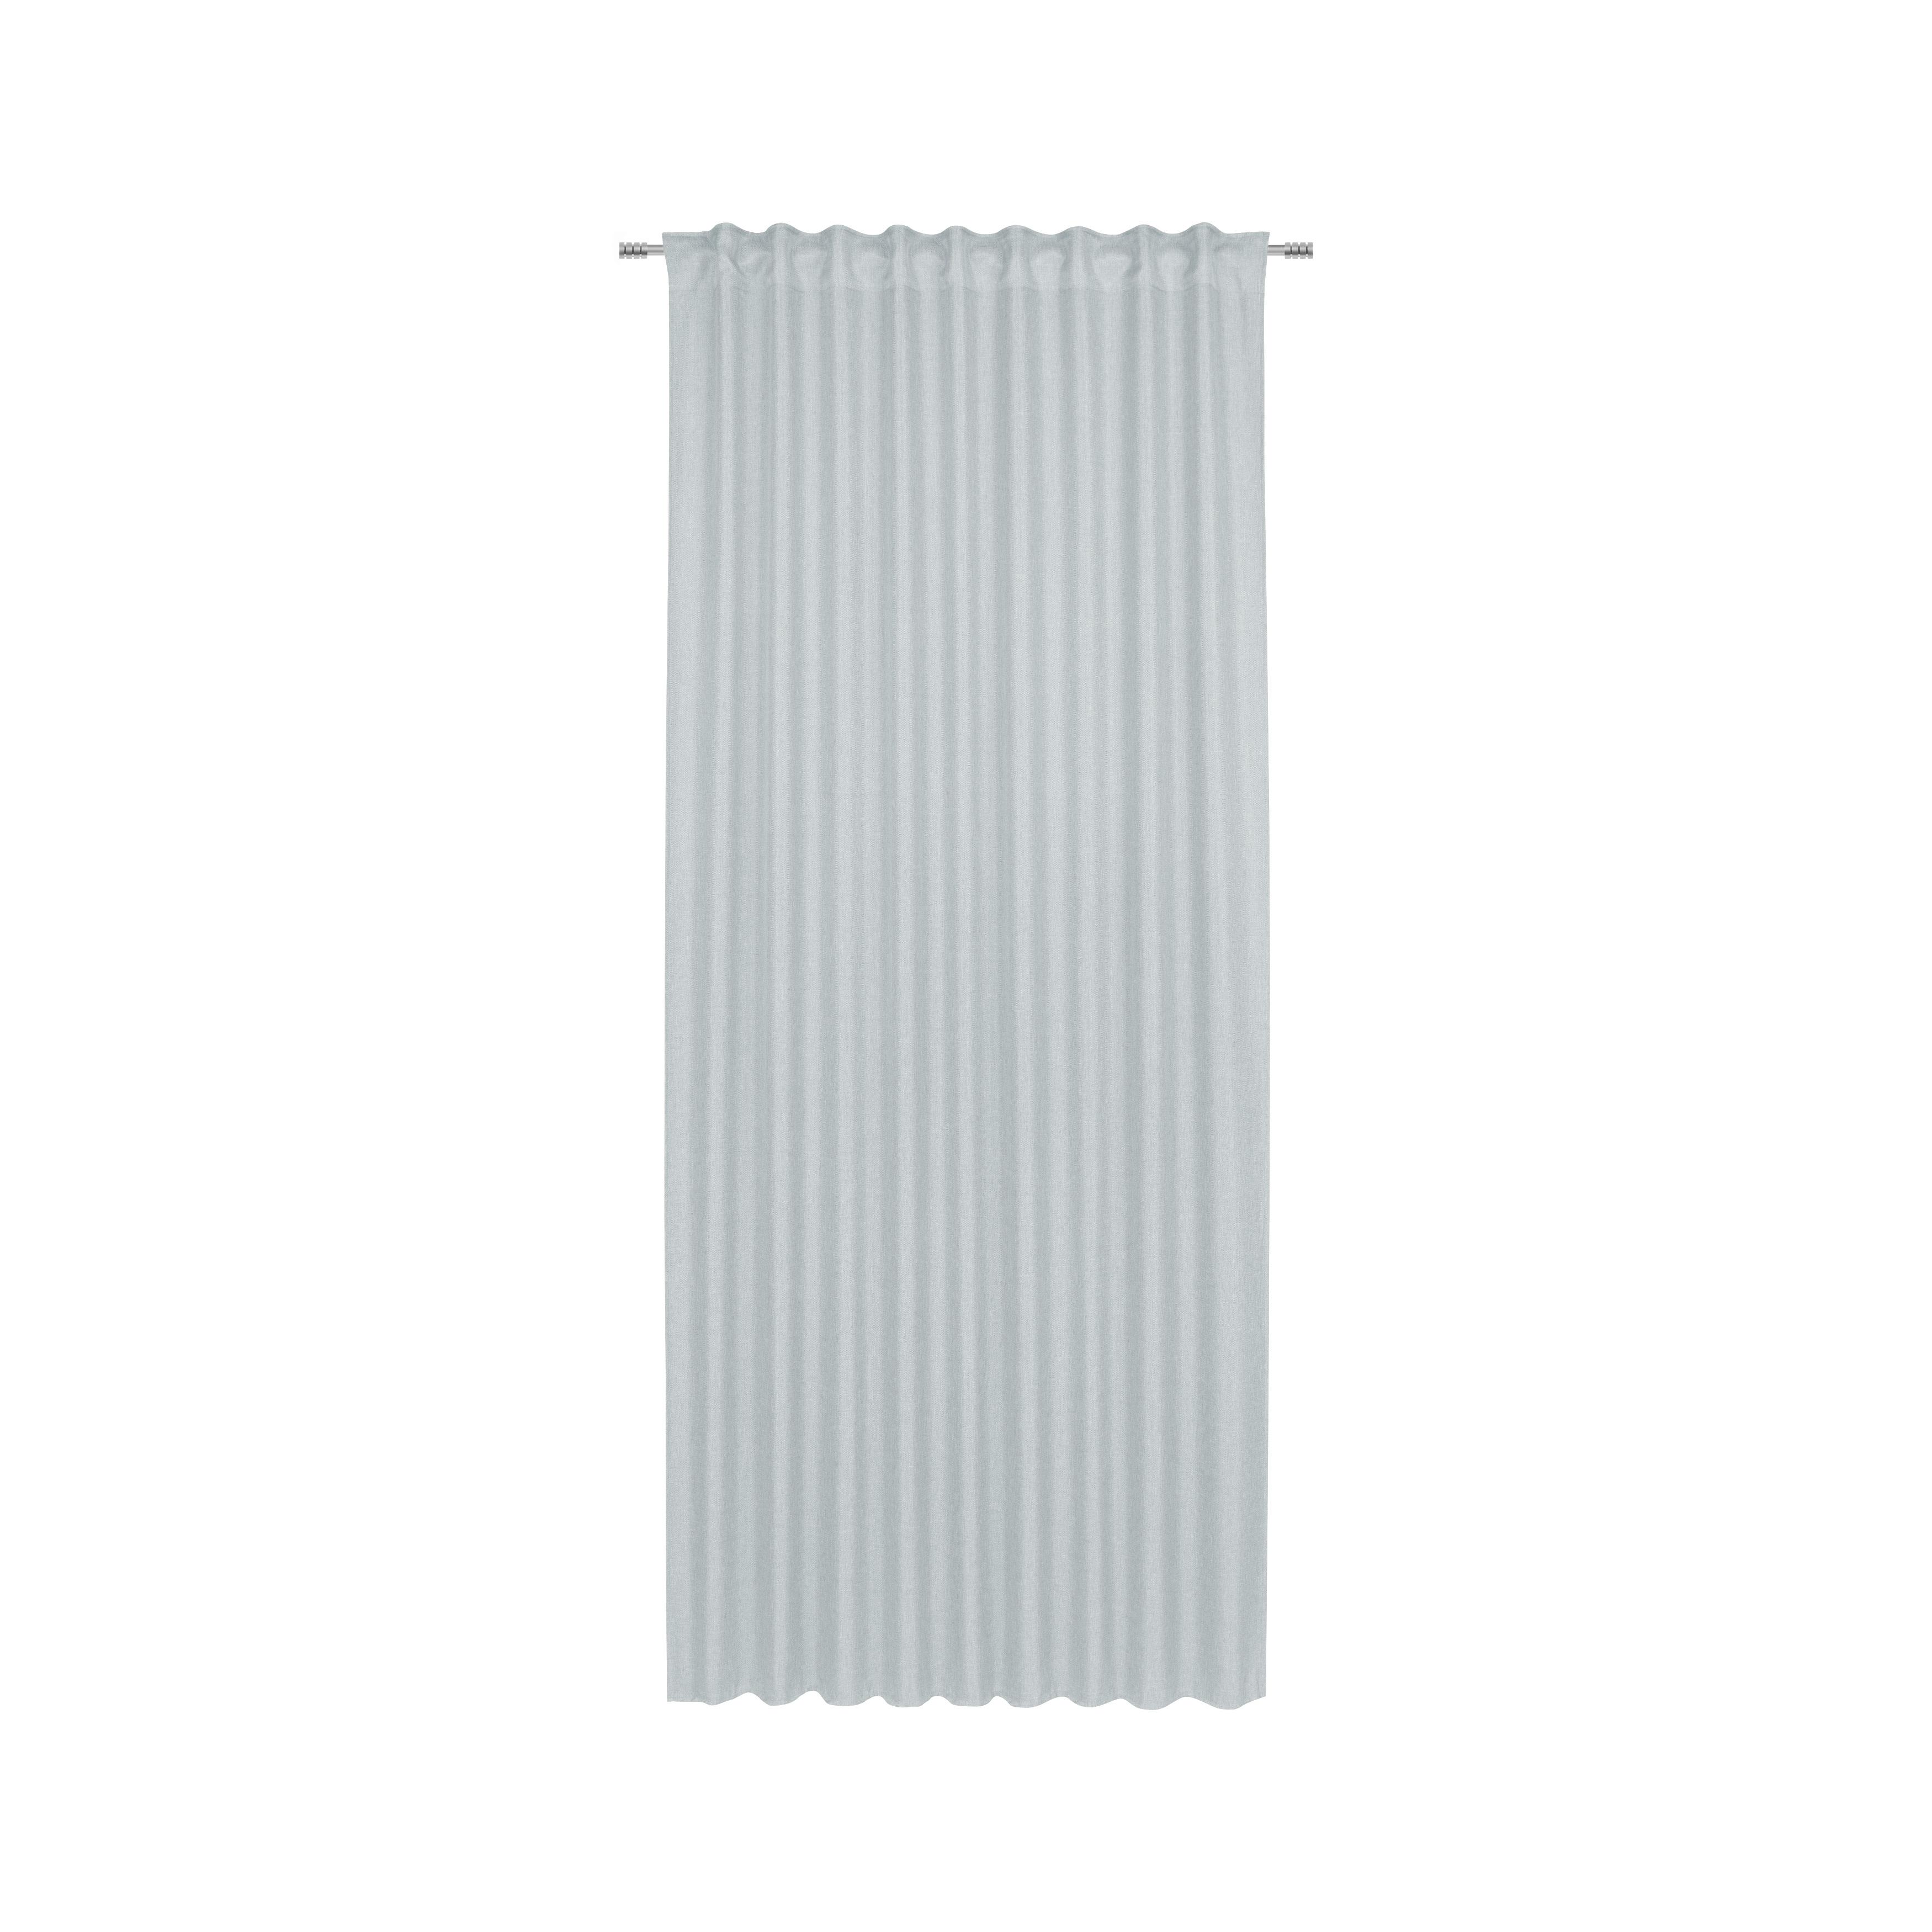 Készfüggöny Andi 2db/csomag - Ezüst, konvencionális, Textil (140/245cm) - Modern Living